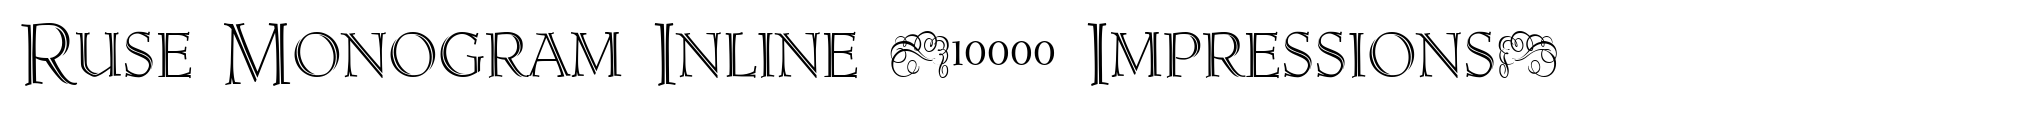 Ruse Monogram Inline (10000 Impressions) image